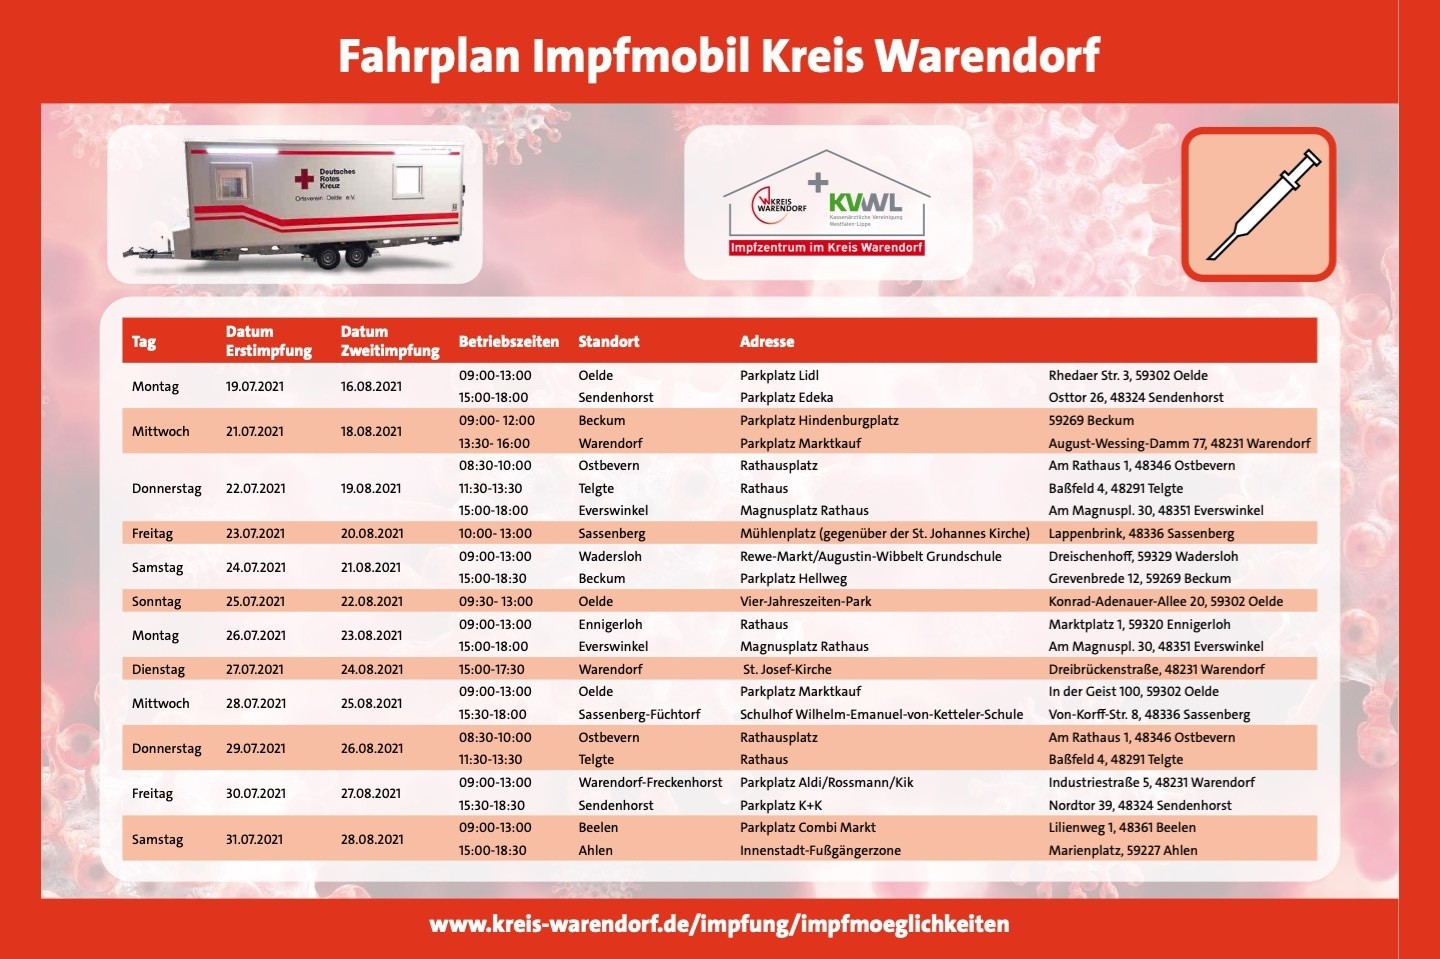 Kreis Warendorf,Impfmobil,Tour,Dr. Olaf Gericke,Corona,Impfung,